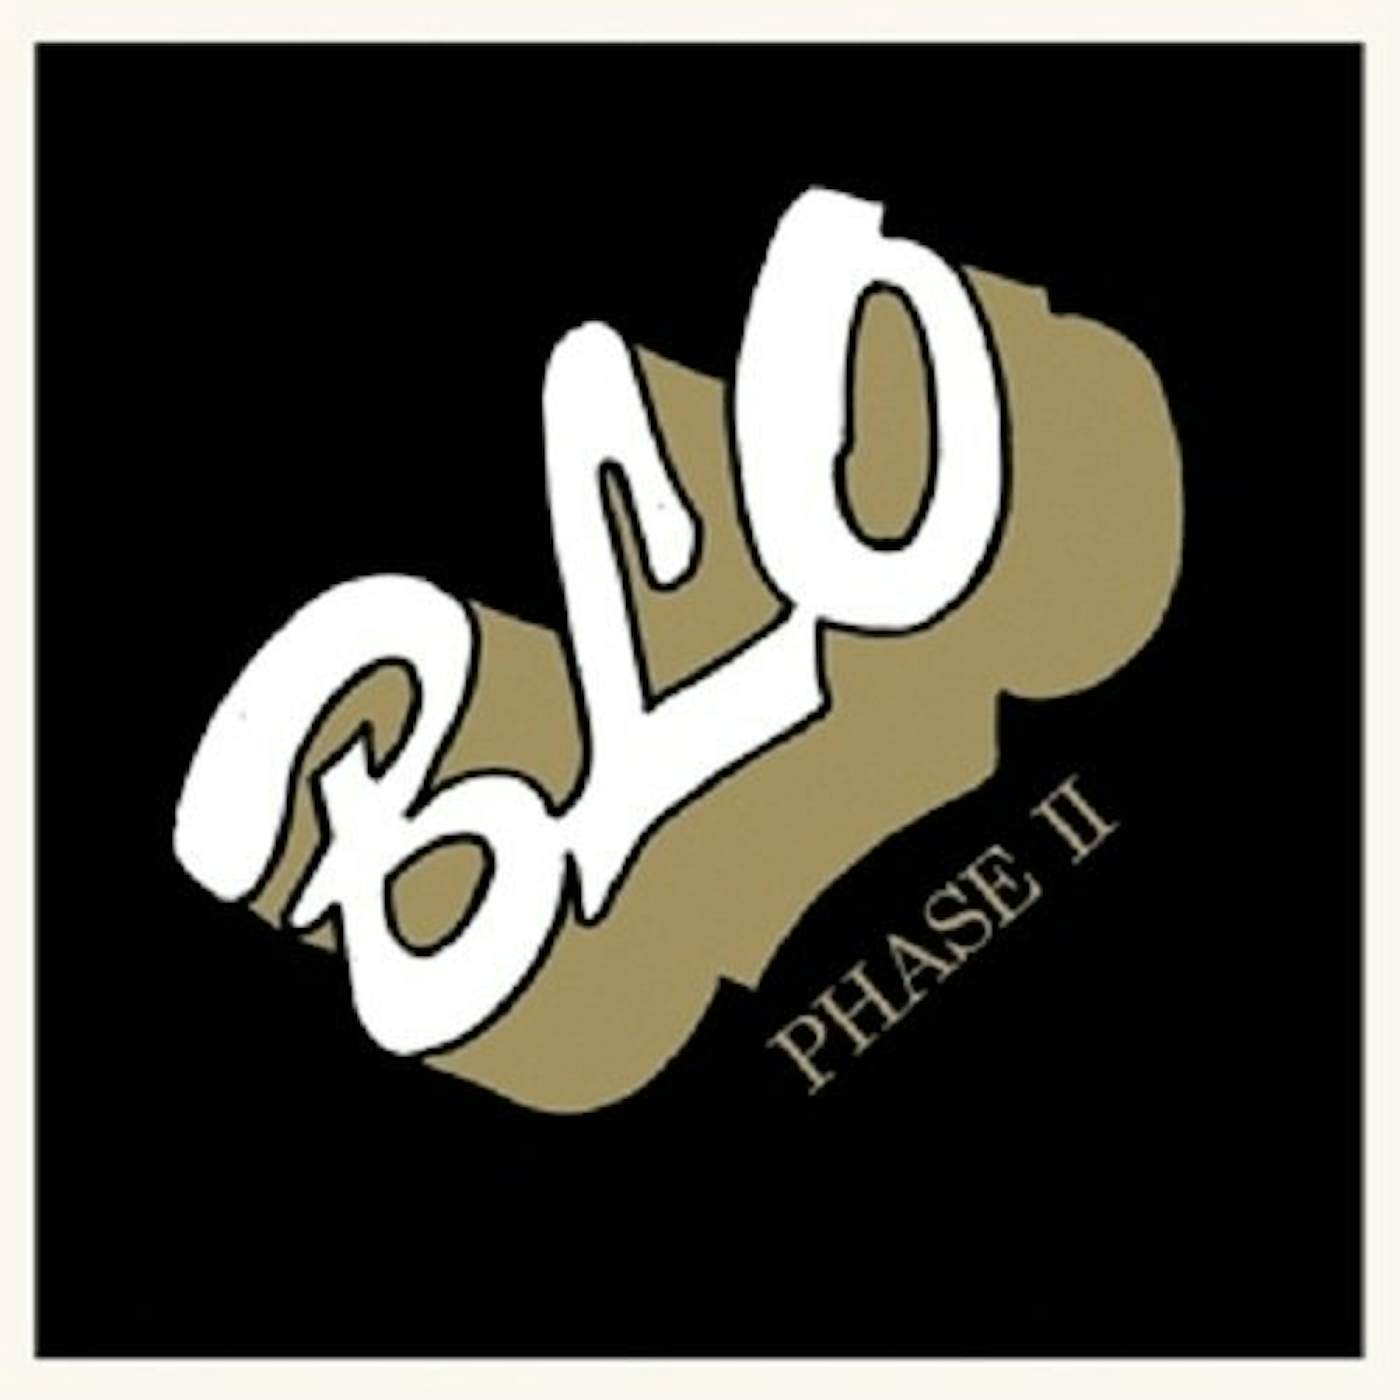 BLO PHASE II Vinyl Record - Remastered